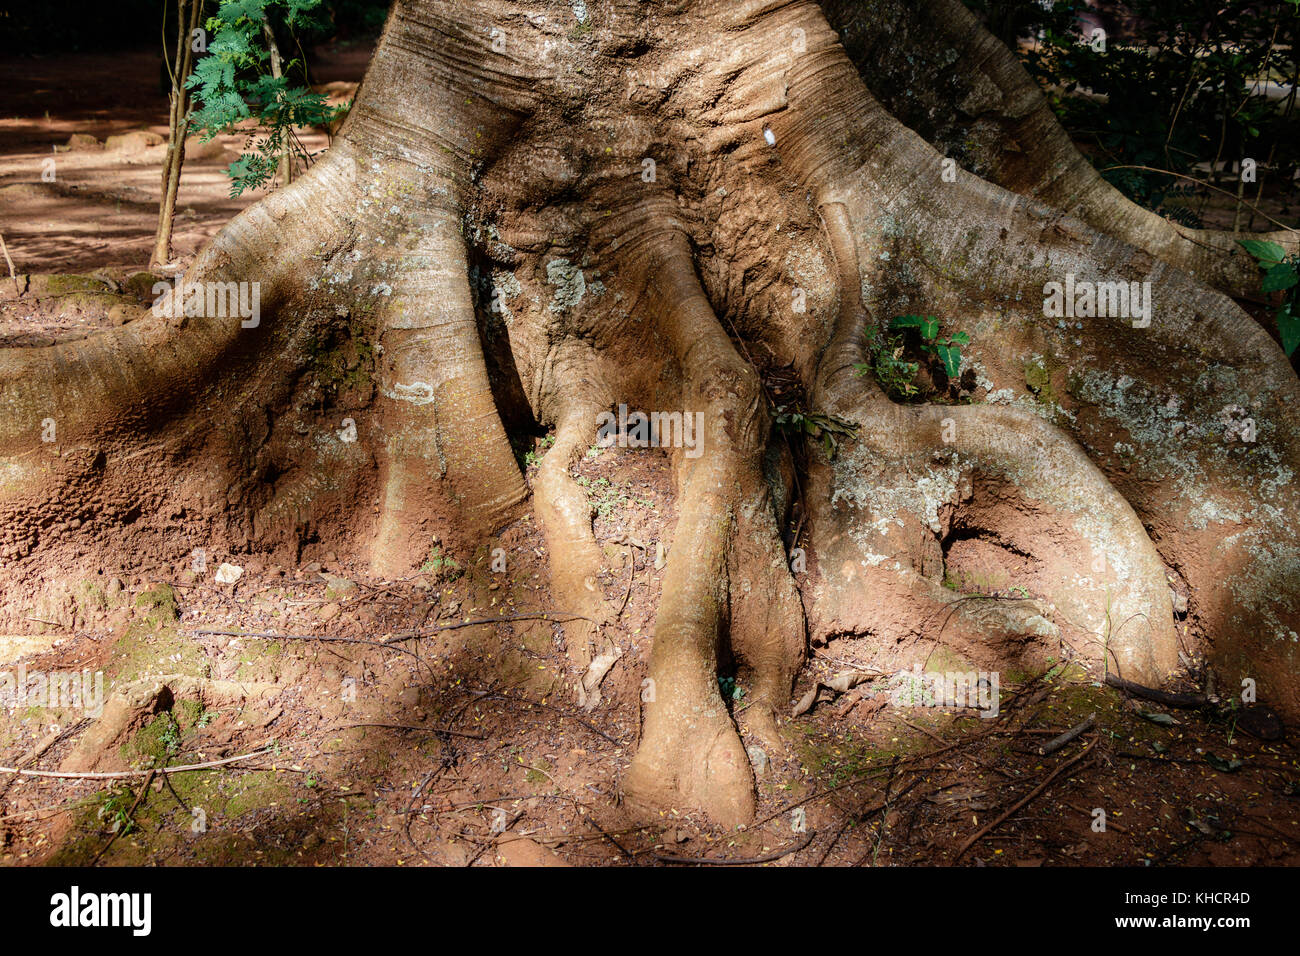 Ficus macrophylla, comúnmente conocida como la bahía de Moreton fig o australianas banyan, es un gran árbol de banyan perenne de la familia Moraceae que es un nativ Foto de stock